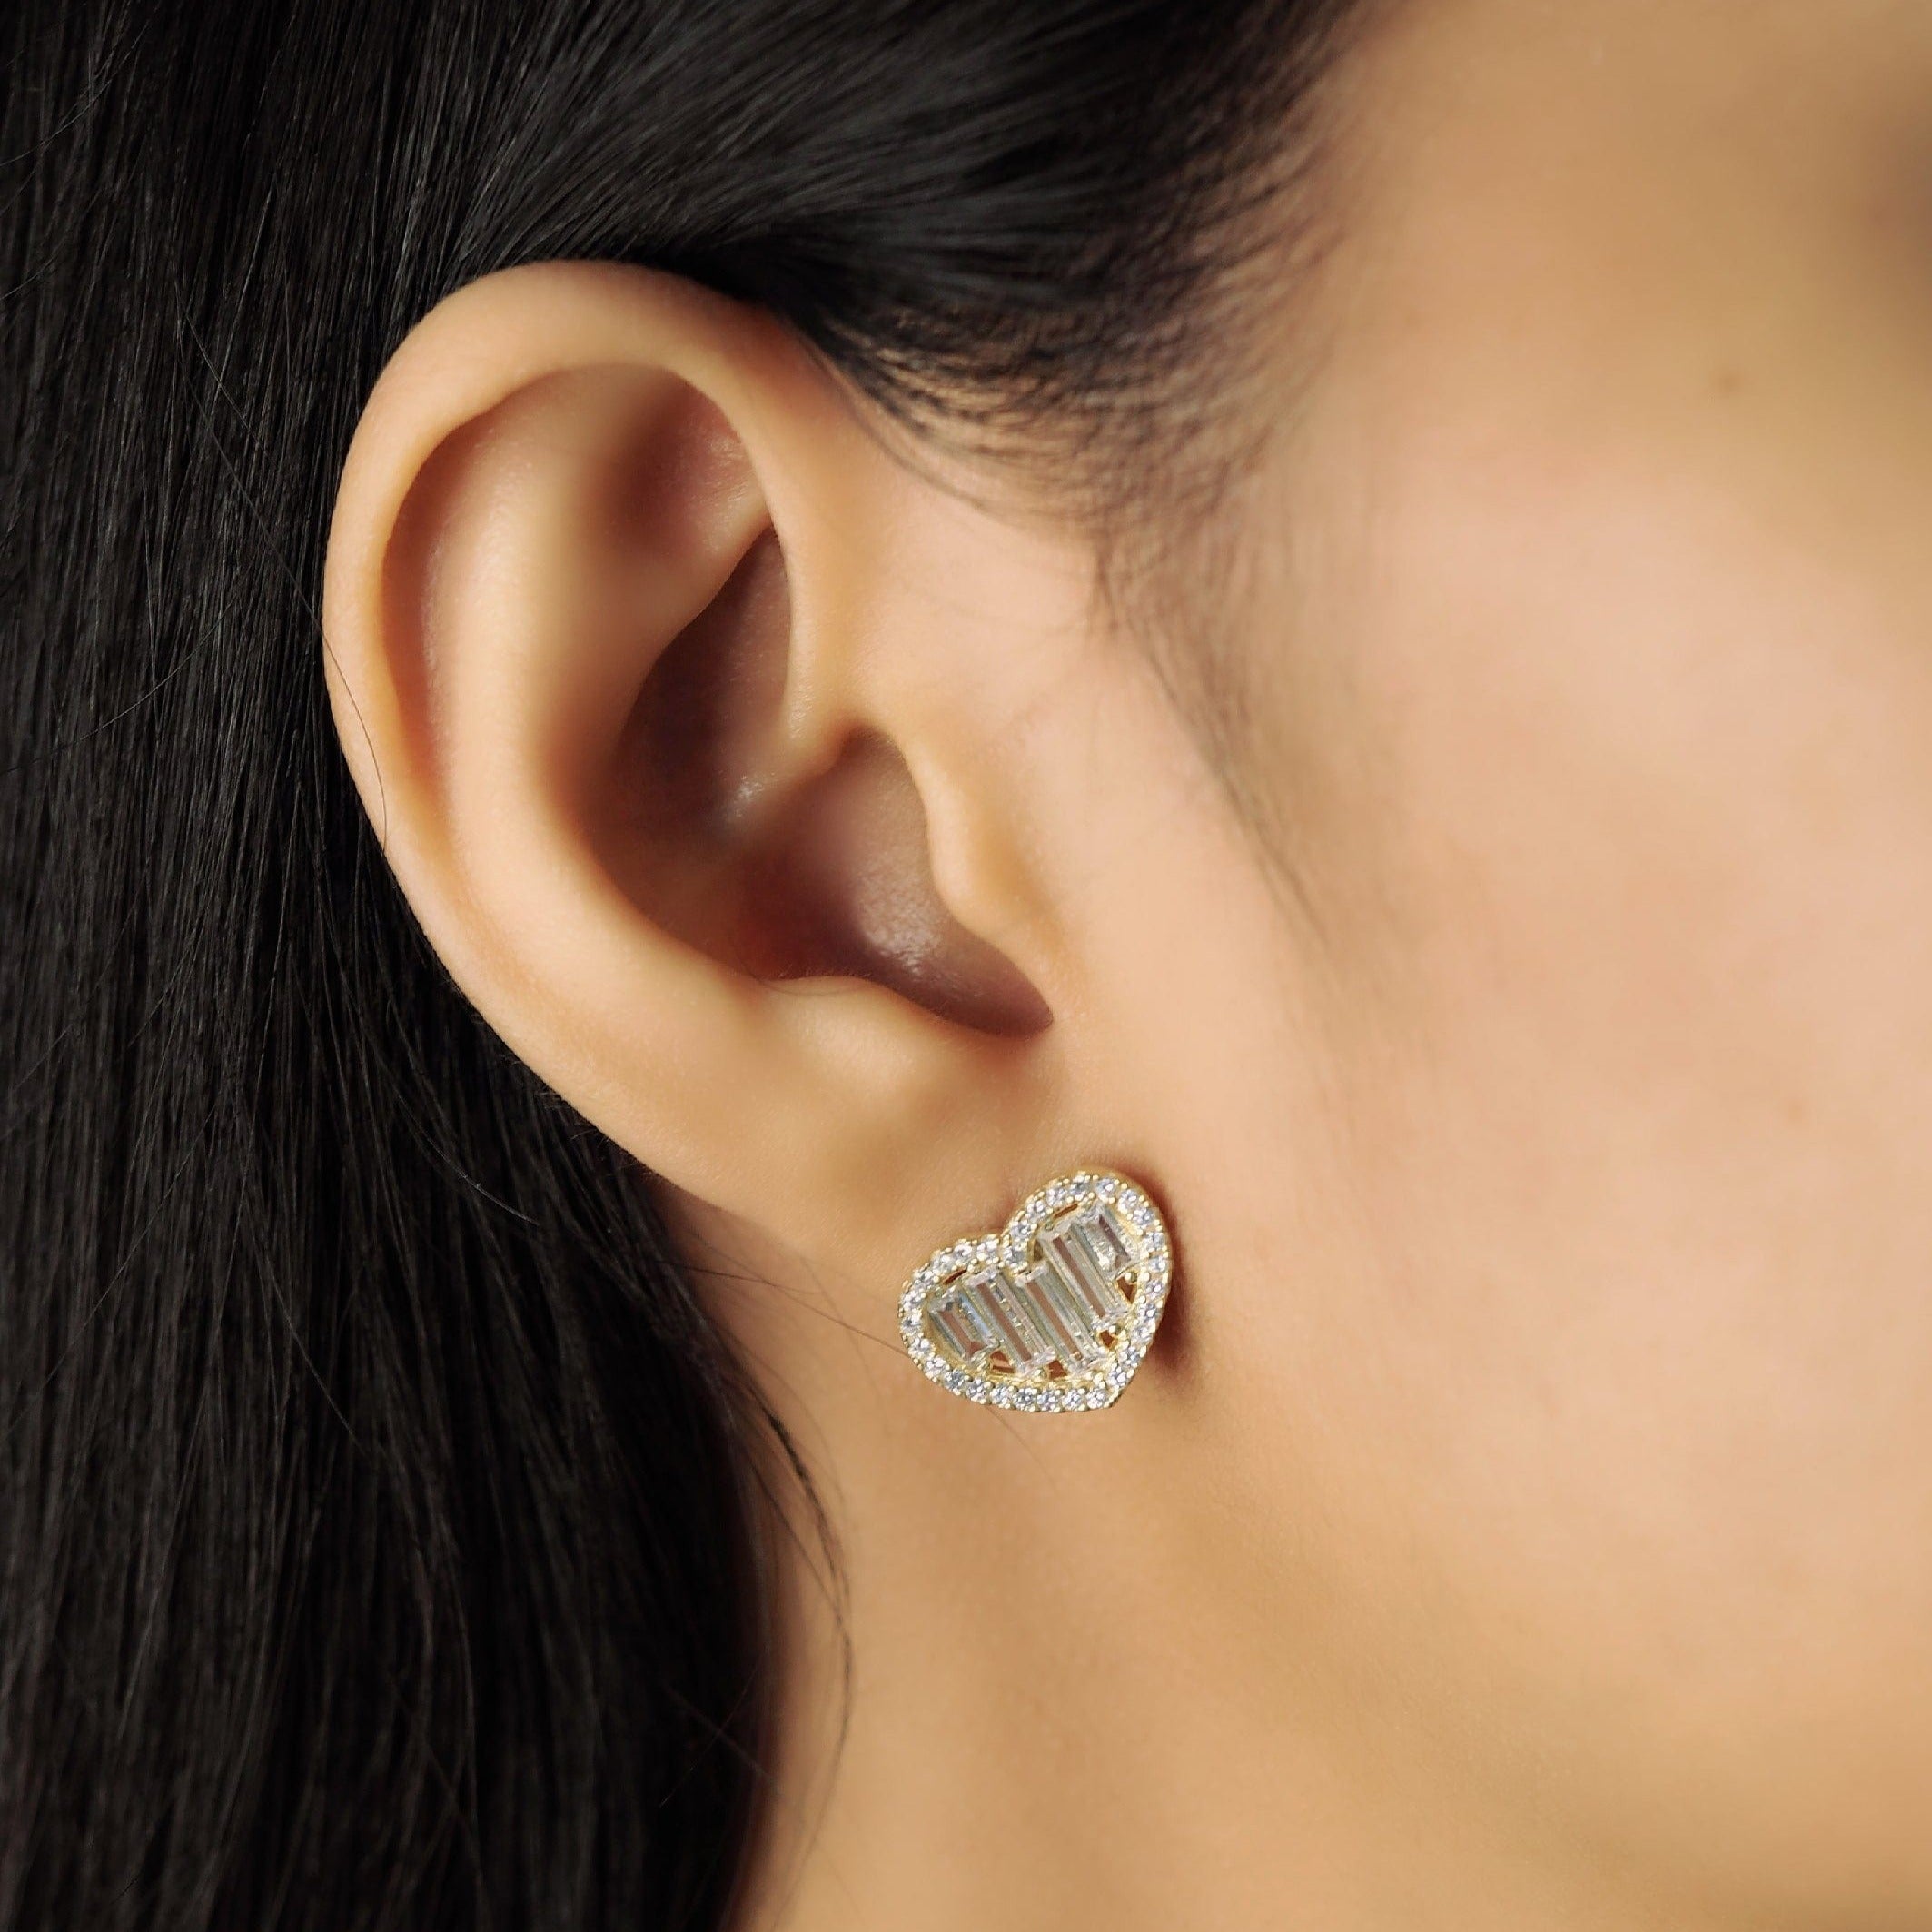 TAI JEWELRY Earrings CZ Baguette Heart Studs